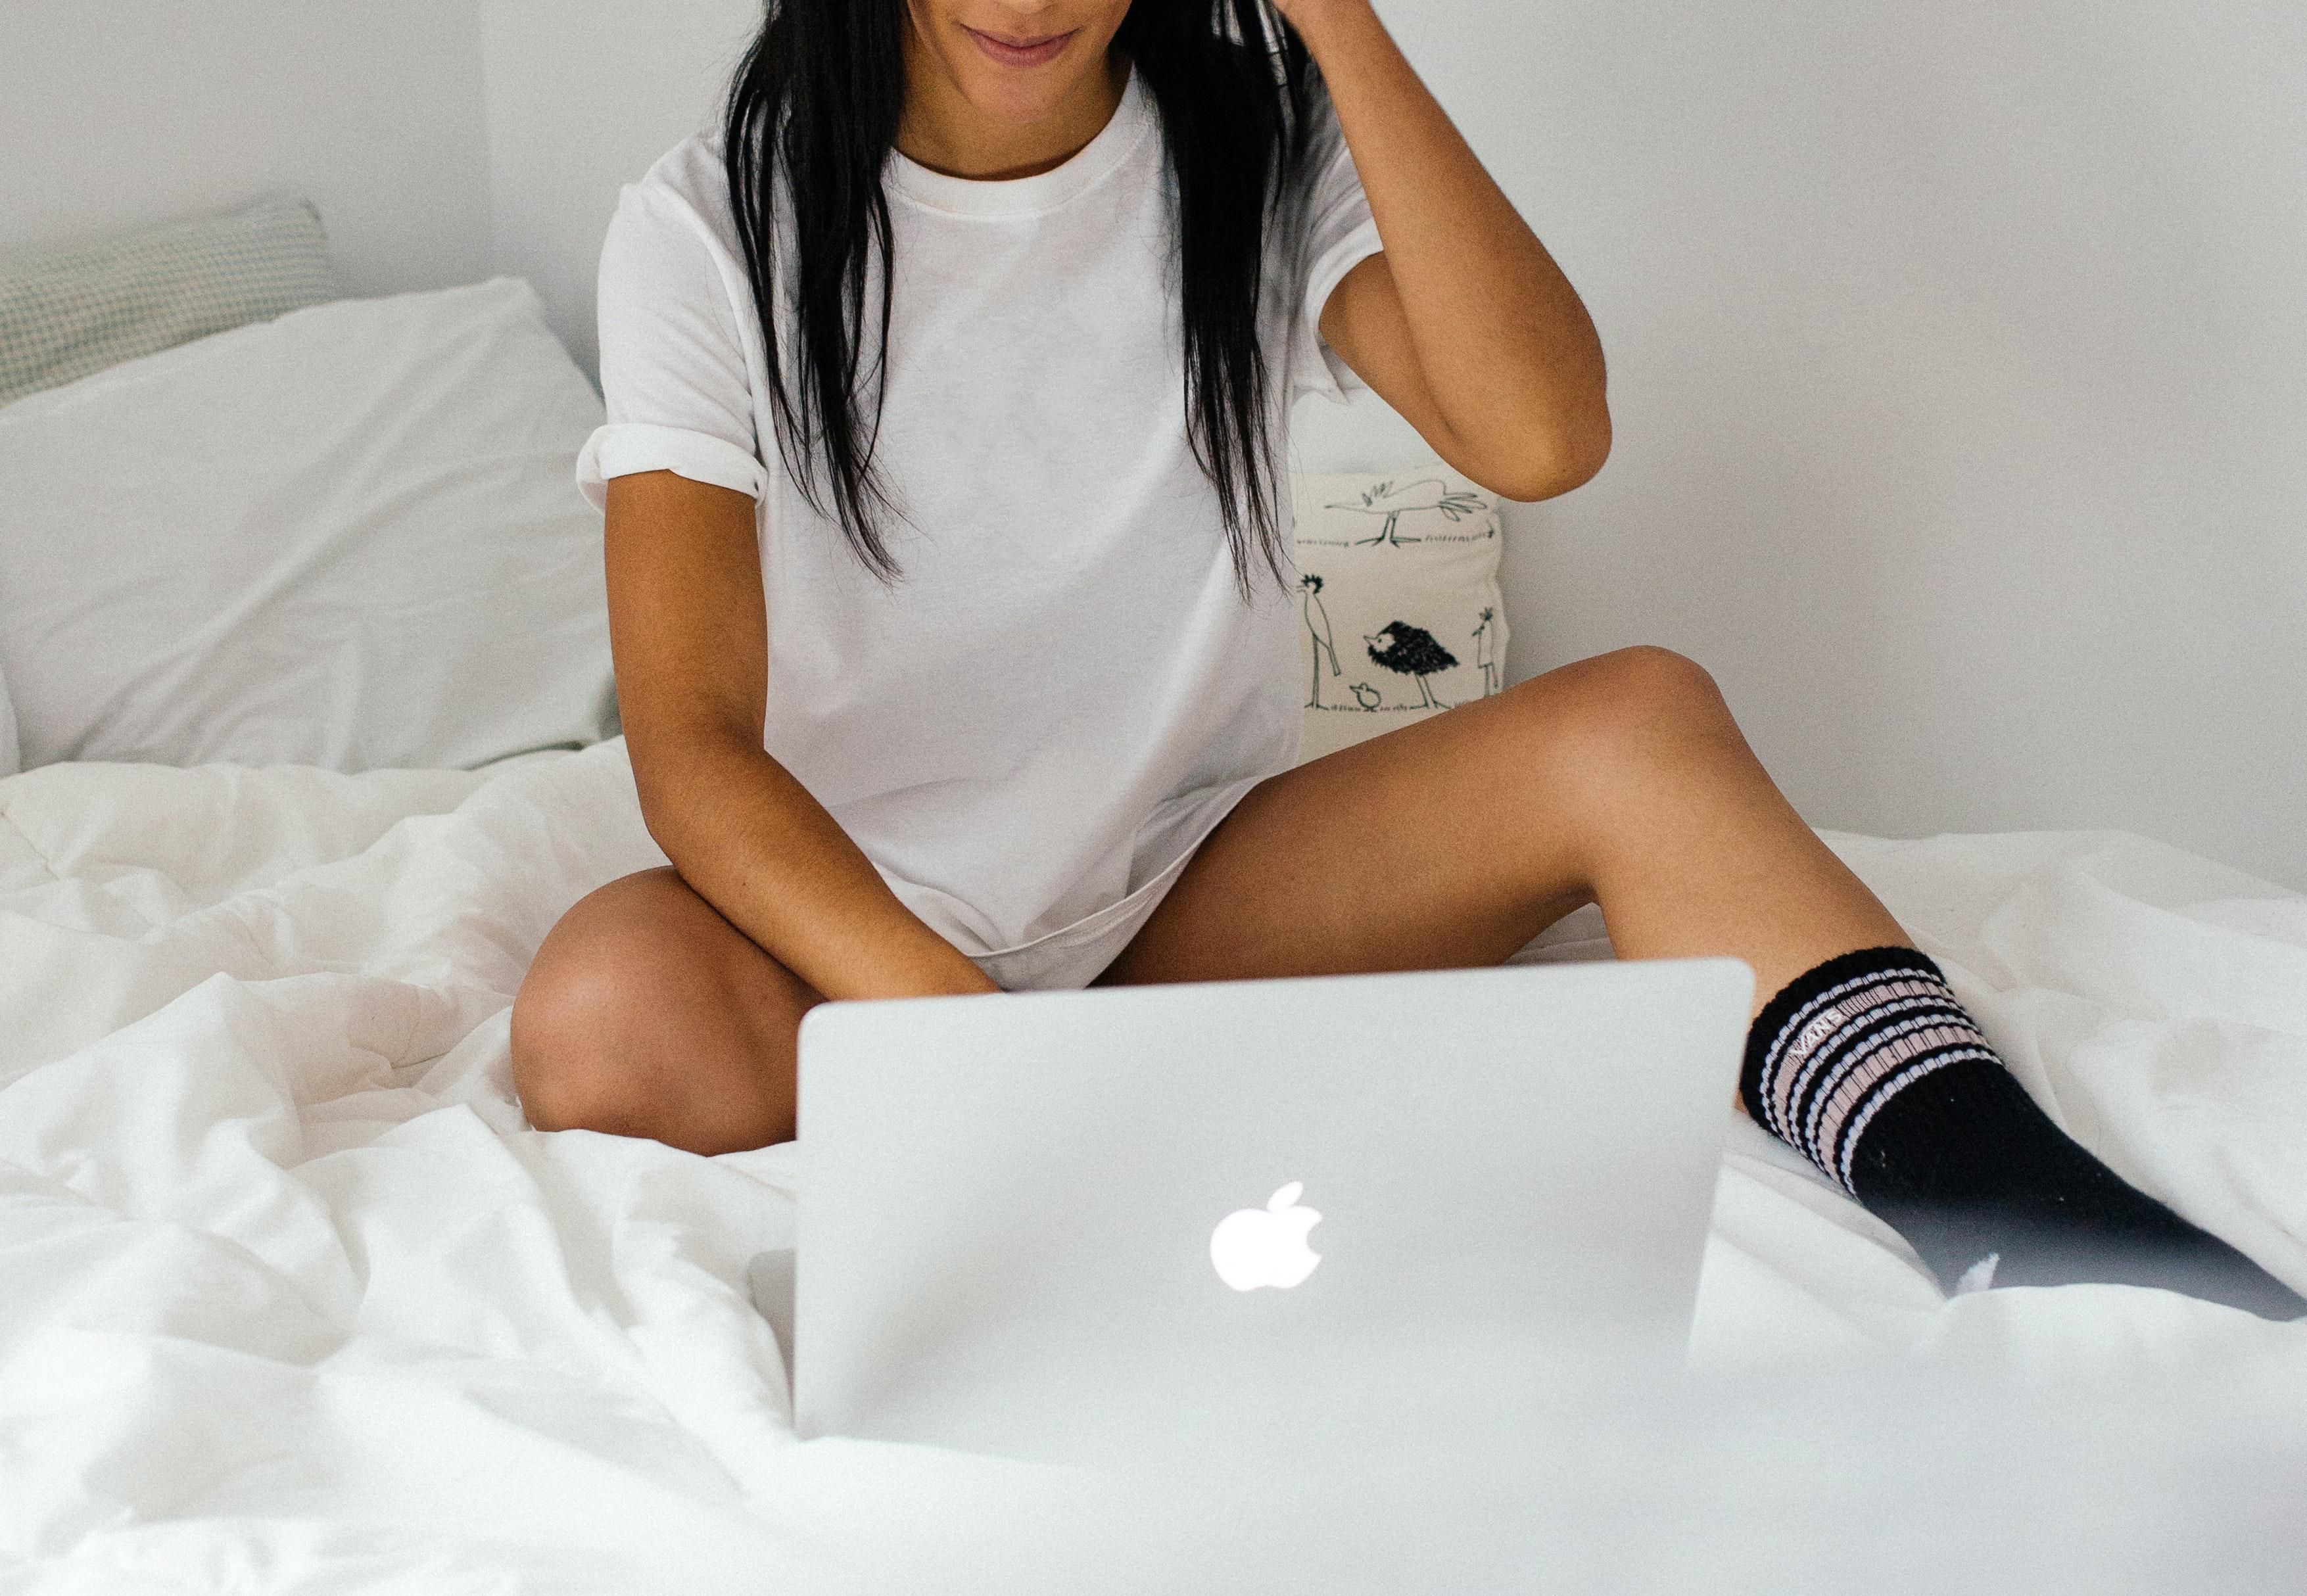 Szép, fekete hajú, fehér pólós, fekete zoknis lány épp OnlyFans tartalmat tölt fel a MacBook-ján